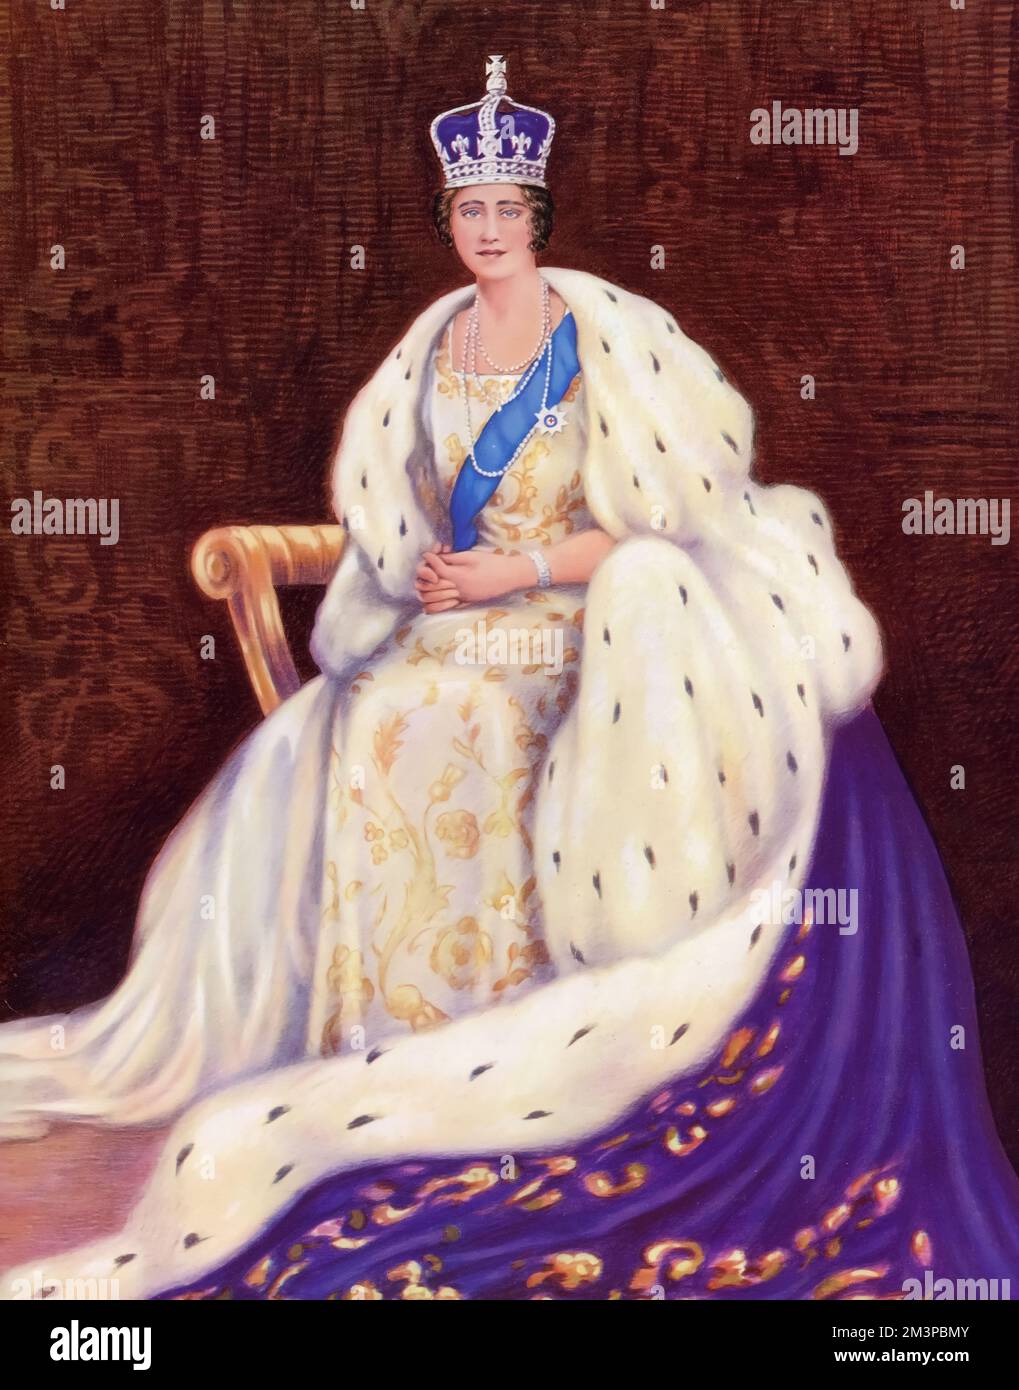 Sa Majesté la reine Elizabeth (1900-2002), portant des robes de couronnement, 1937. Par Louis Dezart. Le couronnement de George VI a eu lieu le 12th mai 1937 à l'abbaye de Westminster, date prévue auparavant pour le couronnement de son frère Edward VIII. Banque D'Images